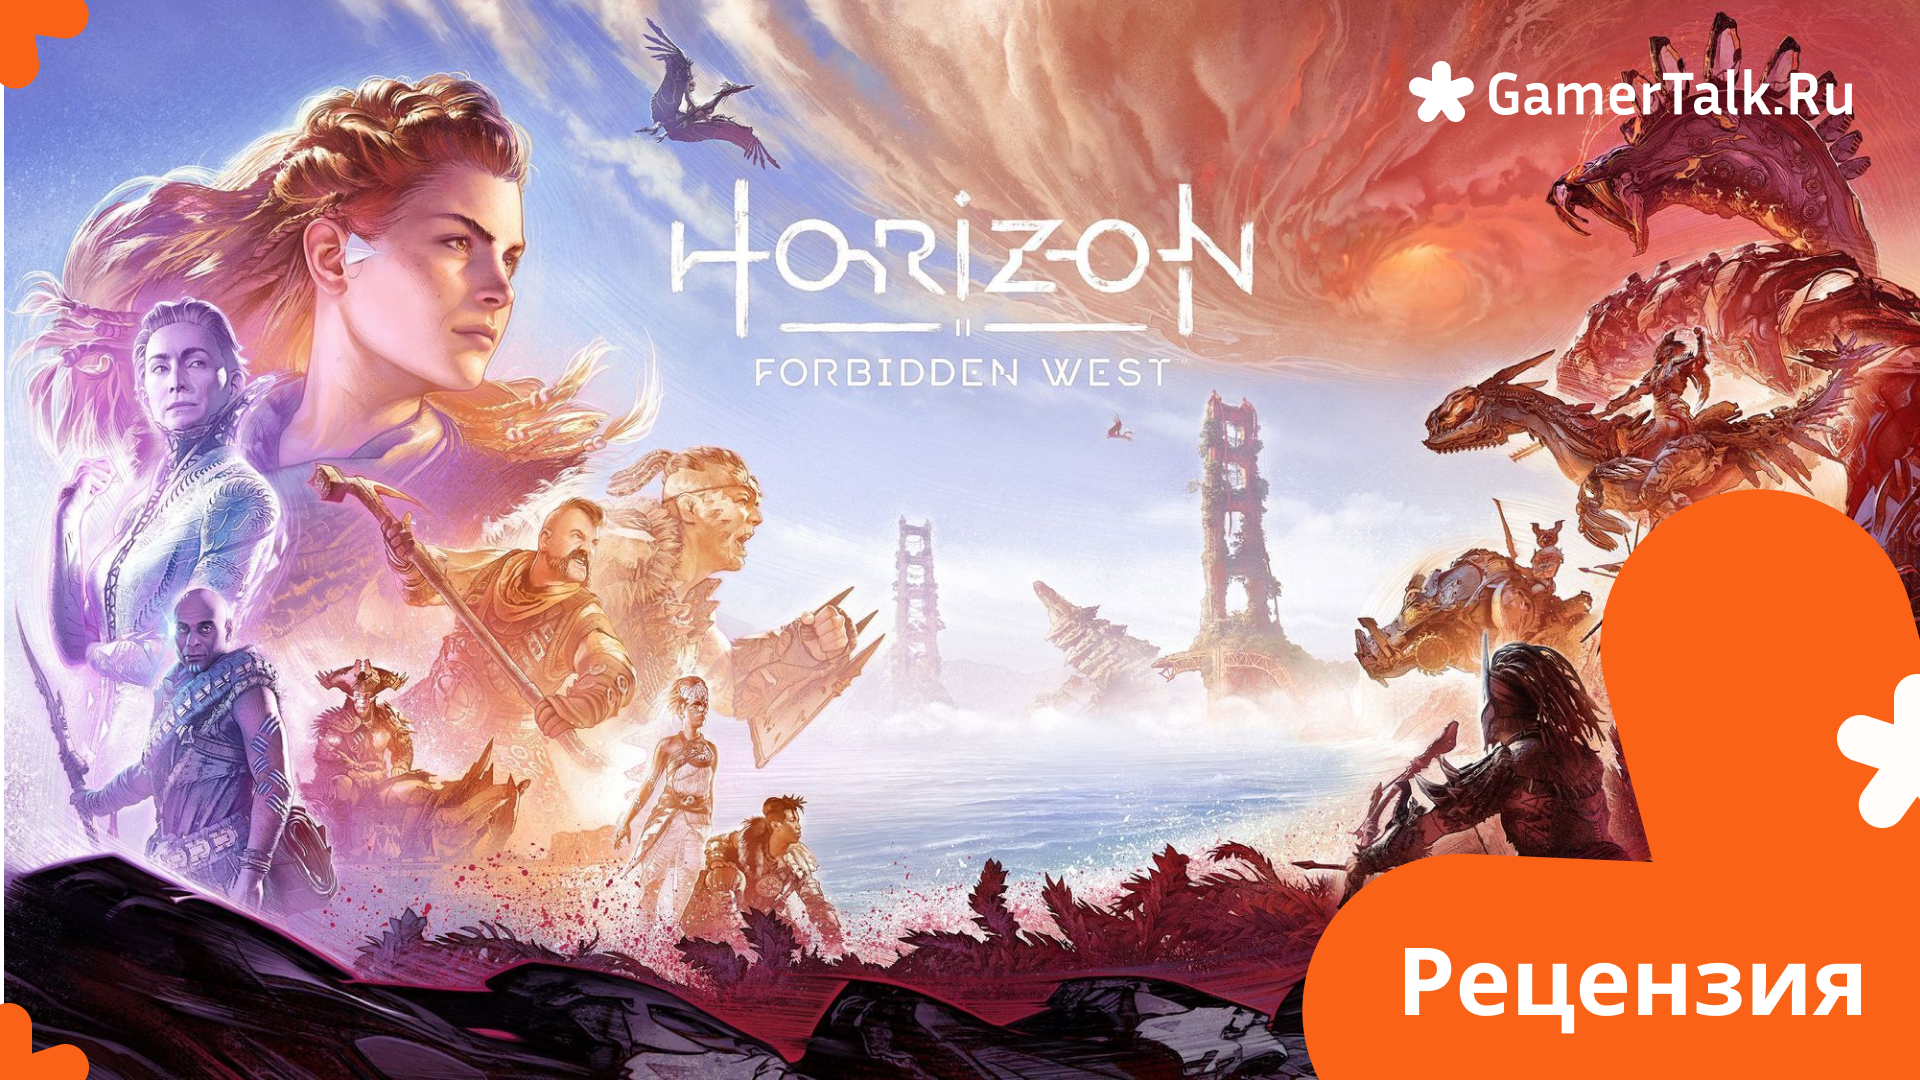 Horizon Forbidden West - Встречайте новое приключение на ПК!